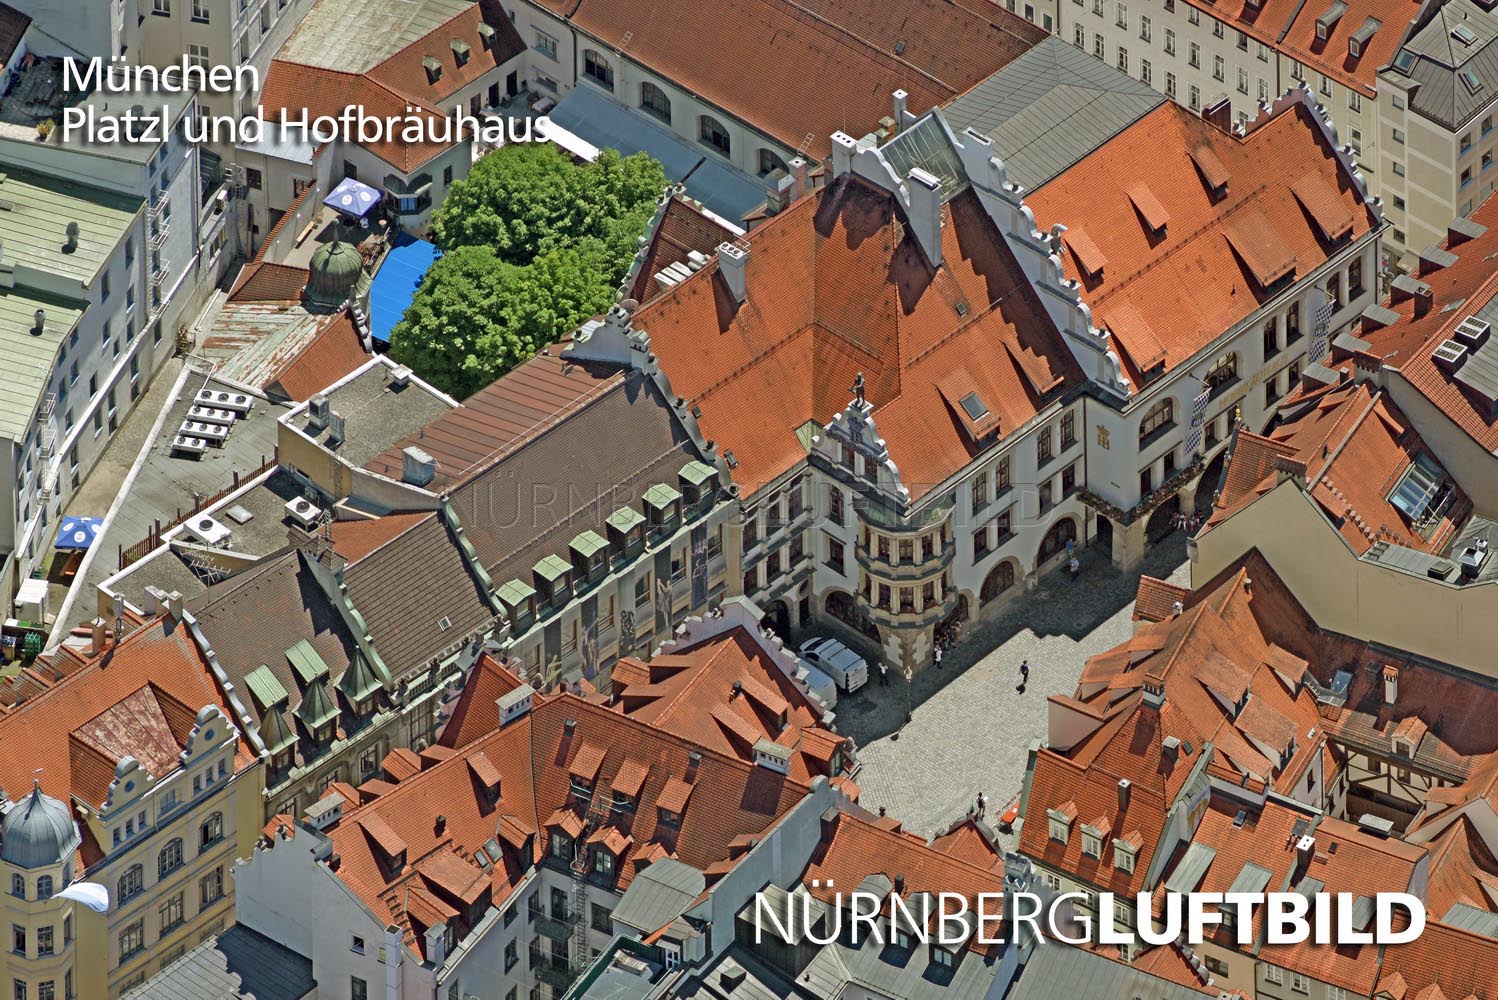 München, Platzl und Hofbräuhaus, Luftbild